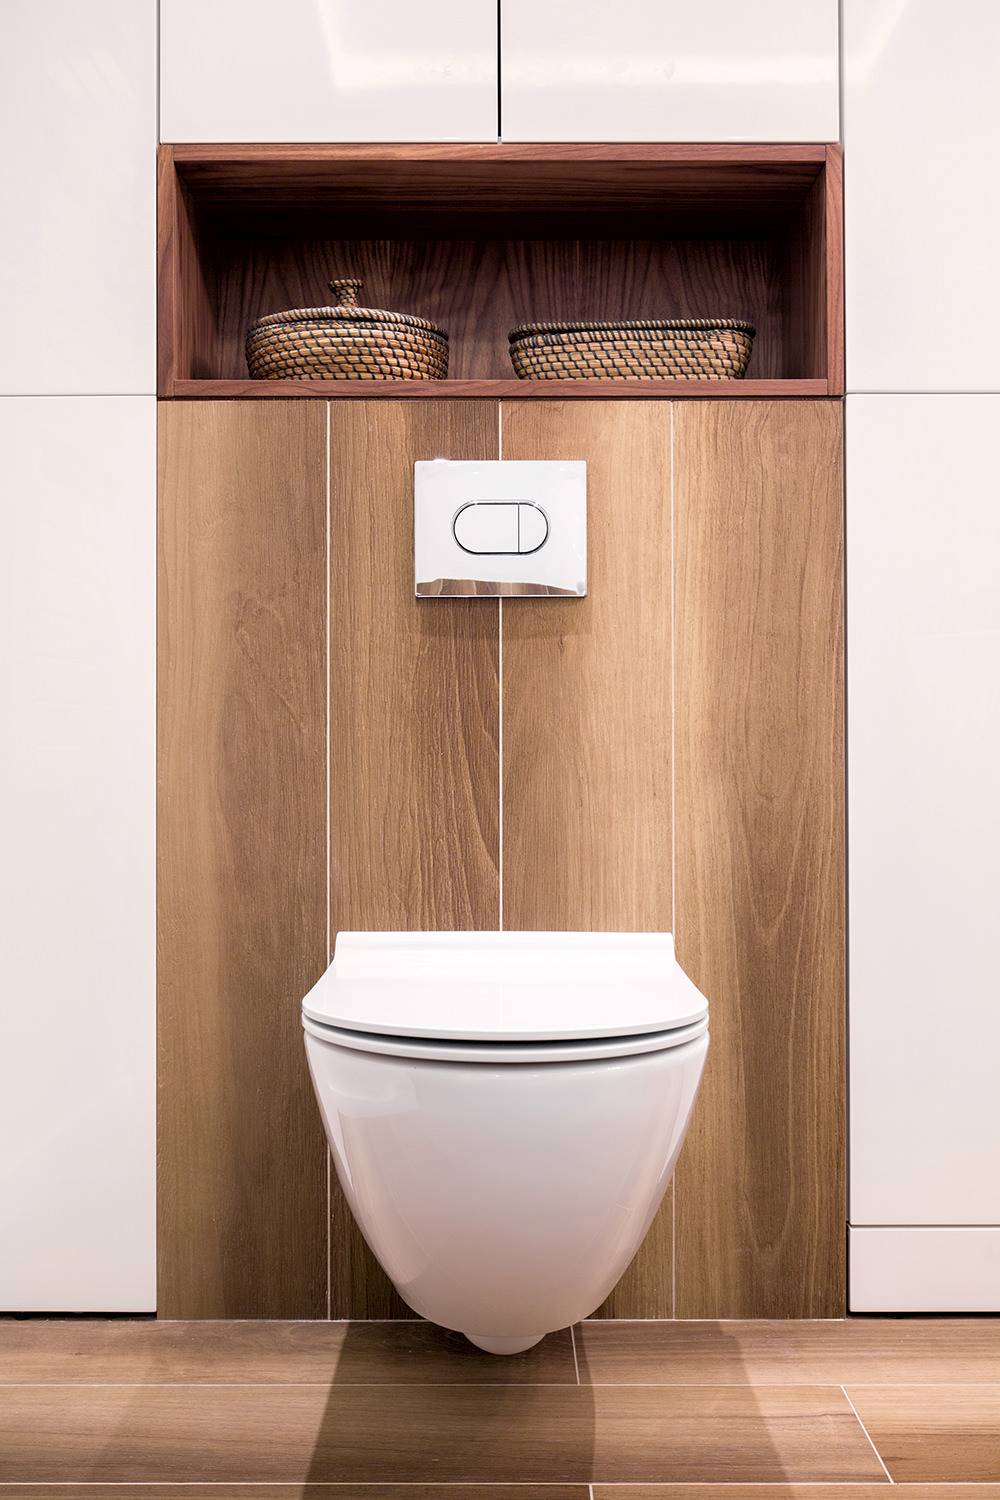 Stilvolles, modernes Ambiente im Badezimmer mit modernem Toilettensitz.